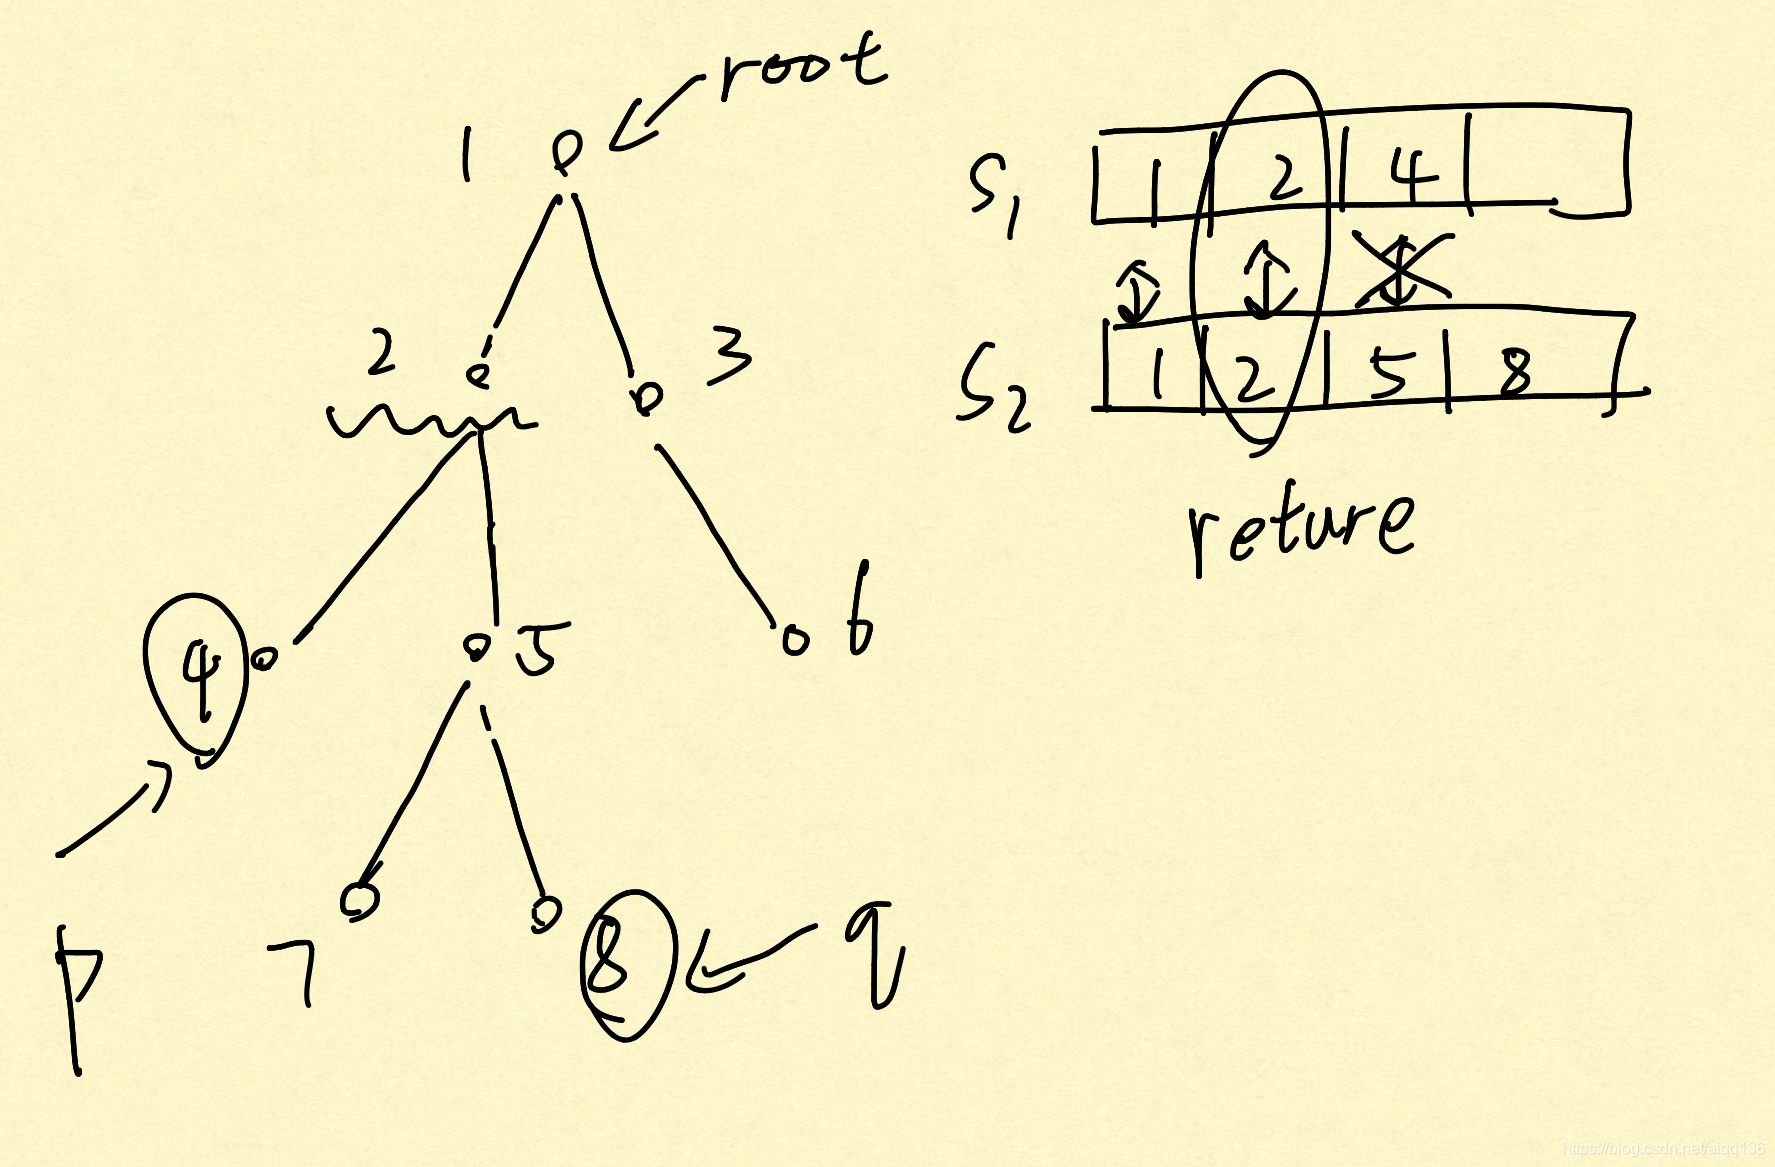 C语言数据结构-树和二叉树-共同祖先  假设二叉树采用二叉链表方式存储， root指向根结点，p所指结点和q所指结点为二叉树中的两个结点，编写一个计算它们的最近的共同祖先